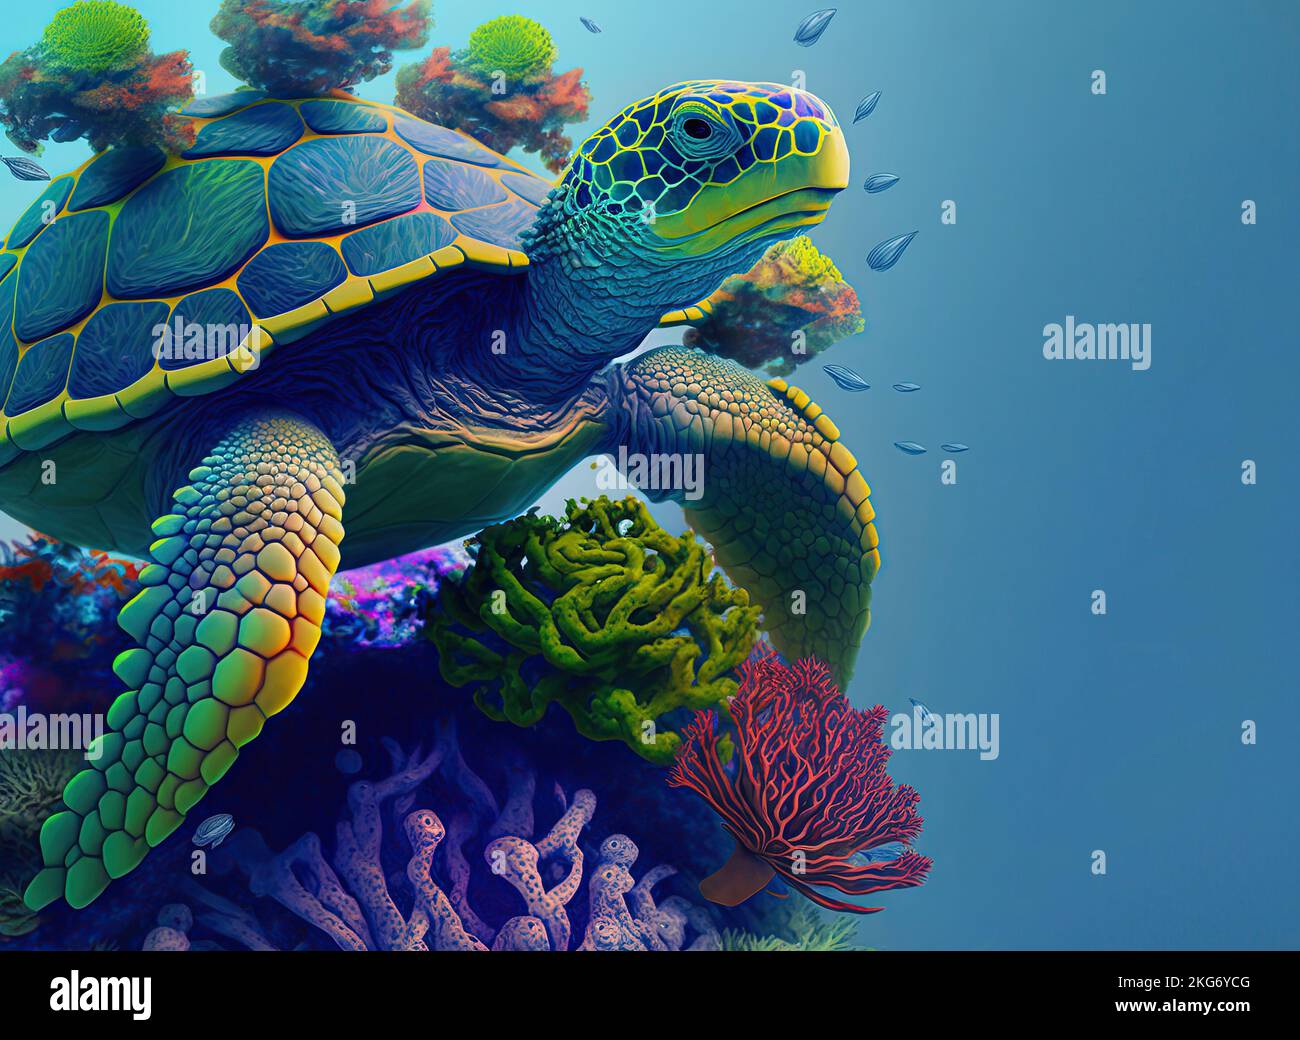 Eine grüne Meeresschildkröte schwimmt zwischen tropischen Meerwasserpflanzen und Korallen im blauen Wasser. Cheloniidae Meeresschildkröten leben in allen Ozeanen der Welt Stockfoto